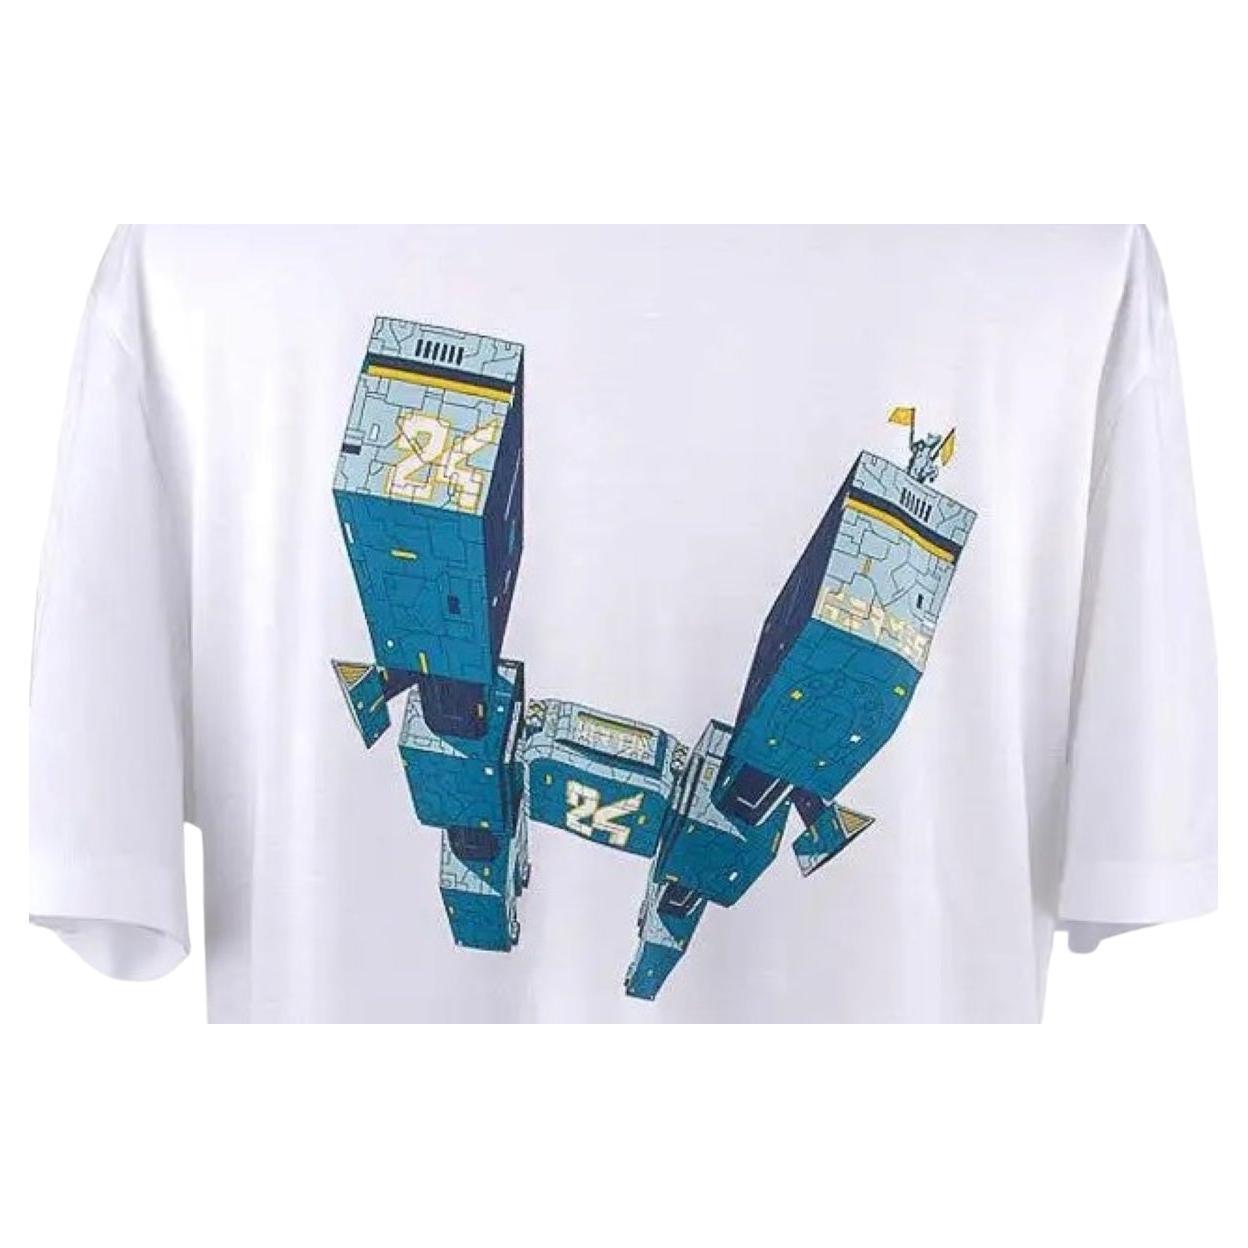 Hermes Shirt - 164 For Sale on 1stDibs | hermes t shirt, hermes 